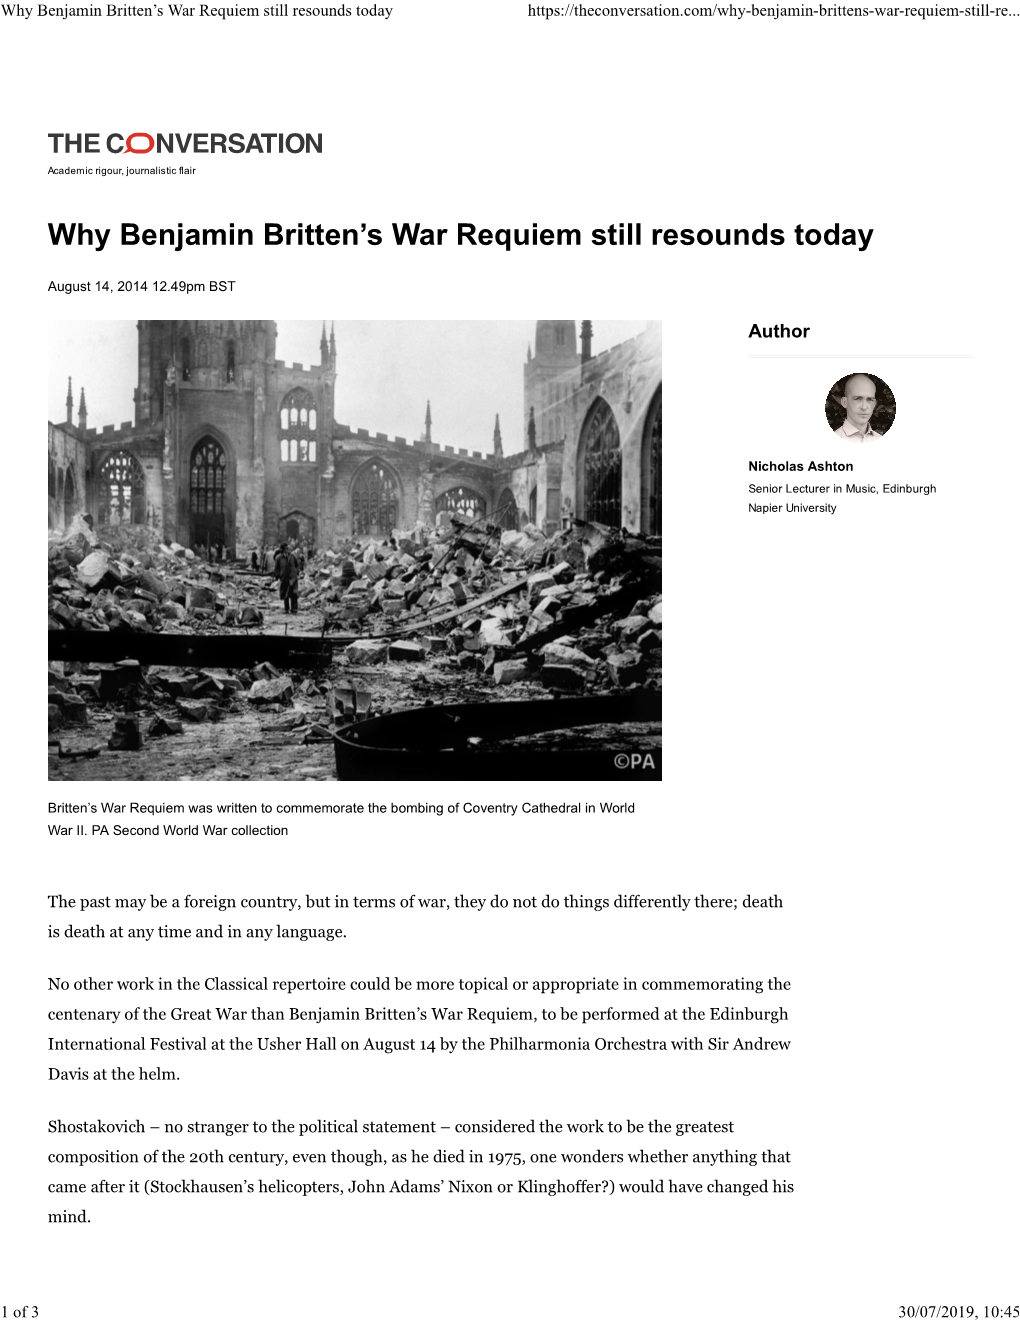 Why Benjamin Britten's War Requiem Still Resounds Today